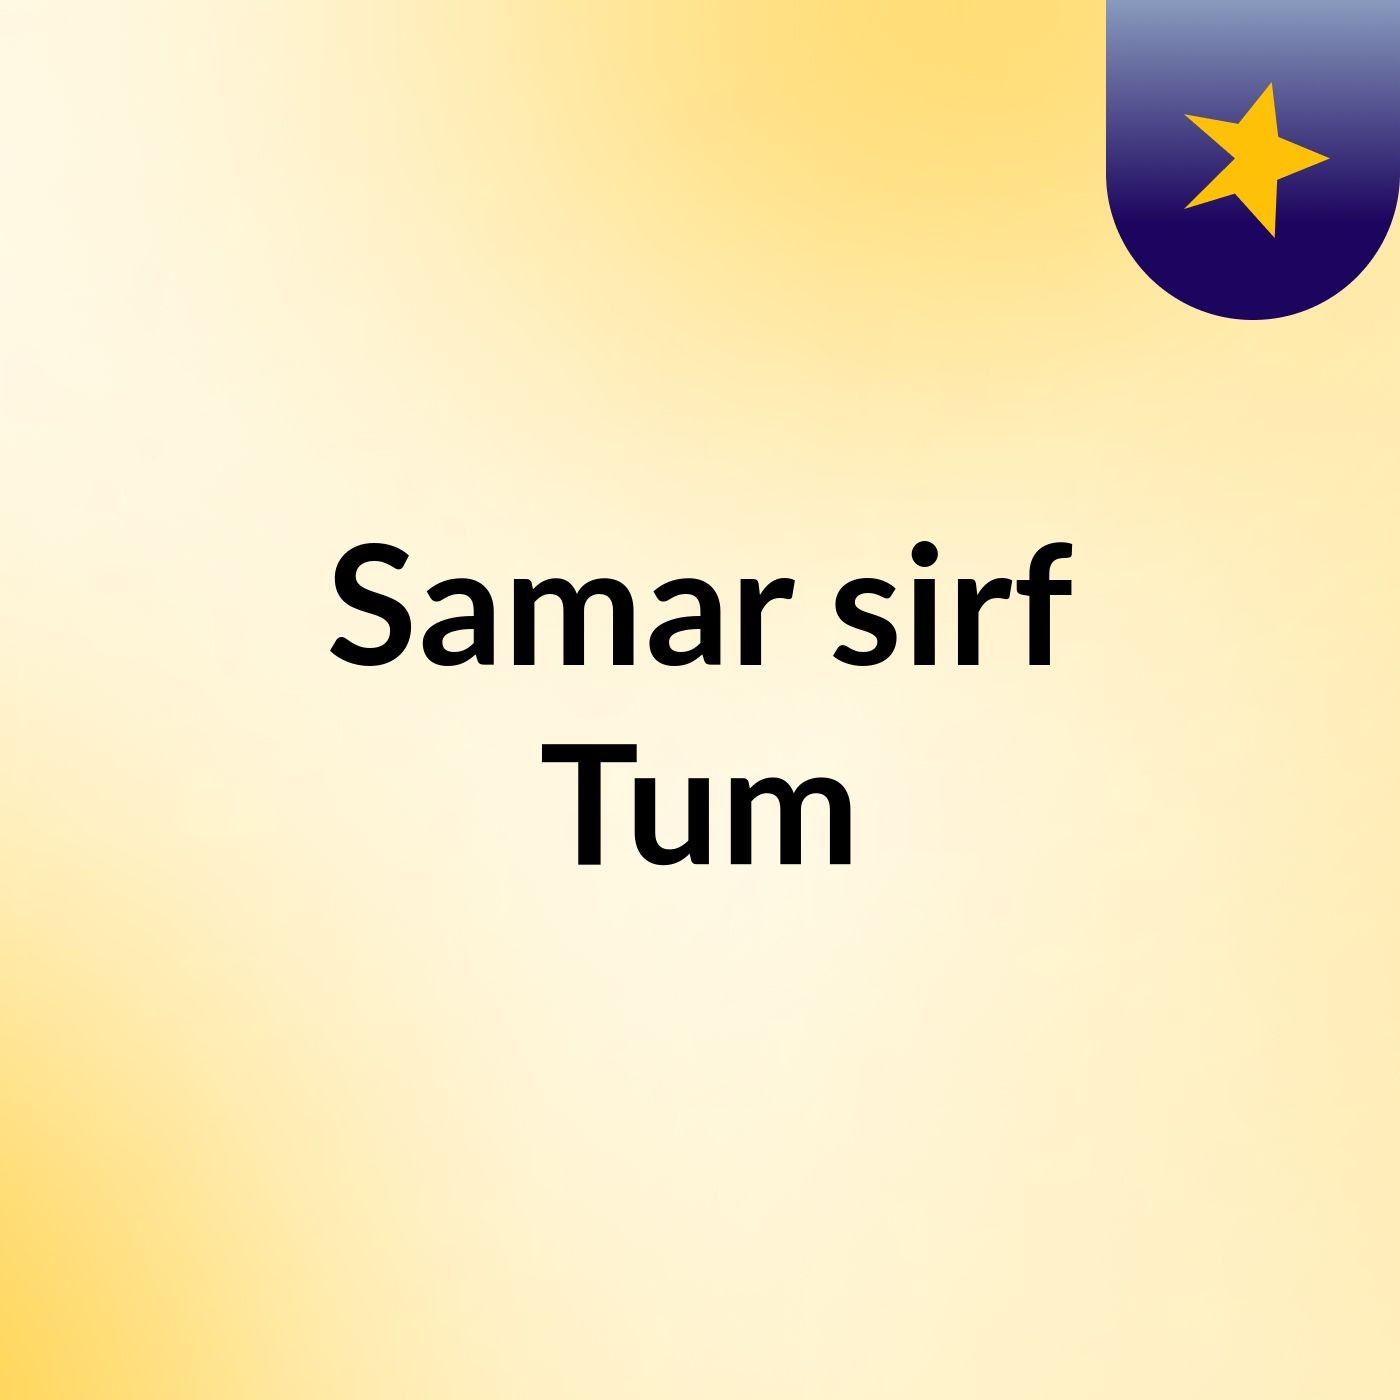 Episode 50 - Samar sirf Tum